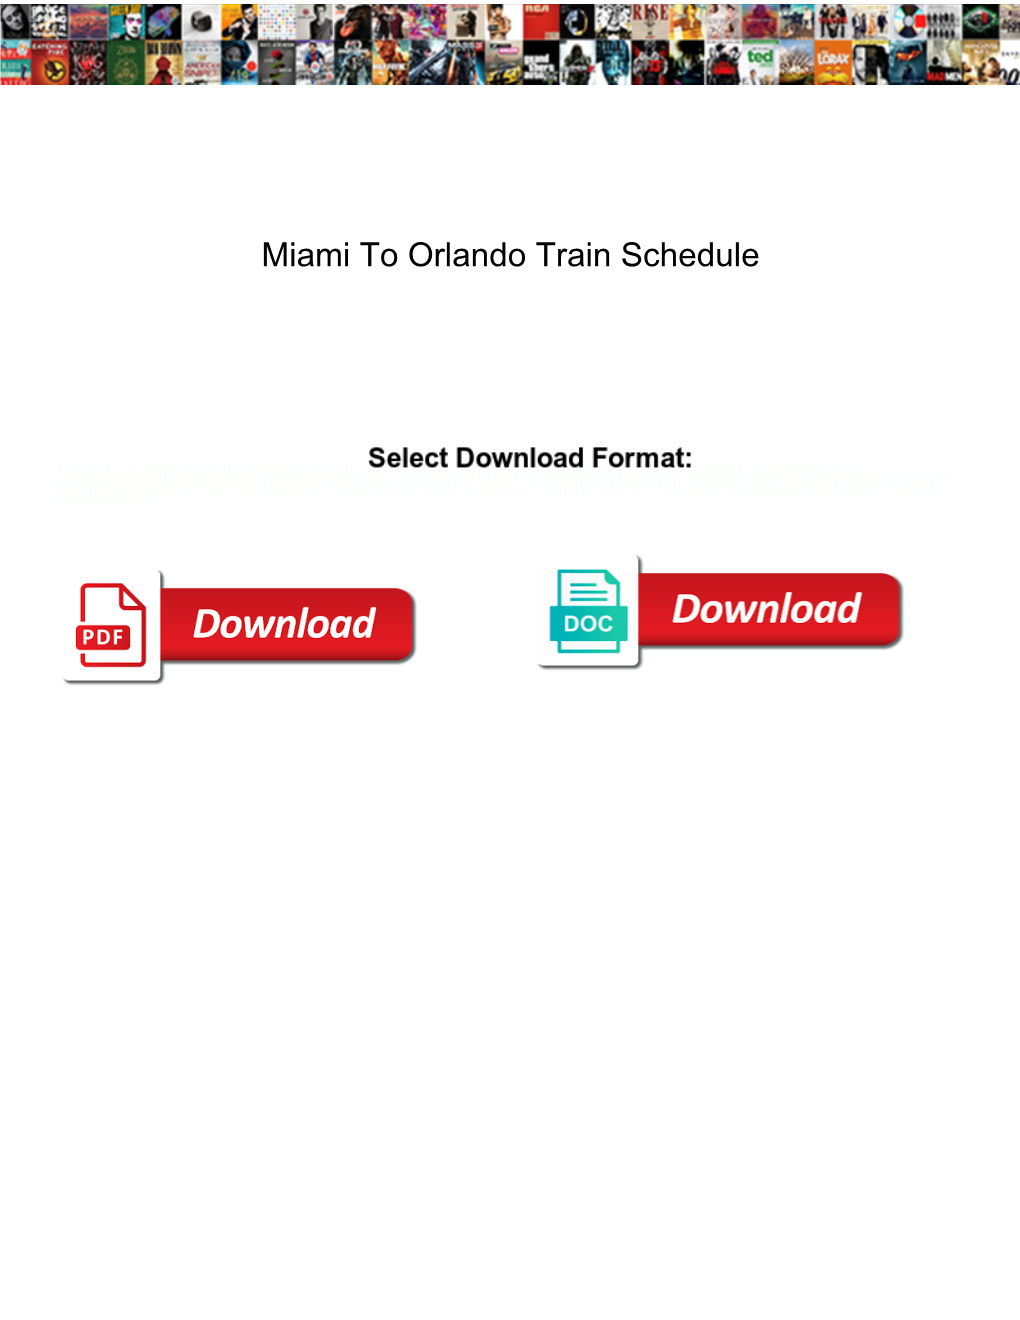 Miami to Orlando Train Schedule